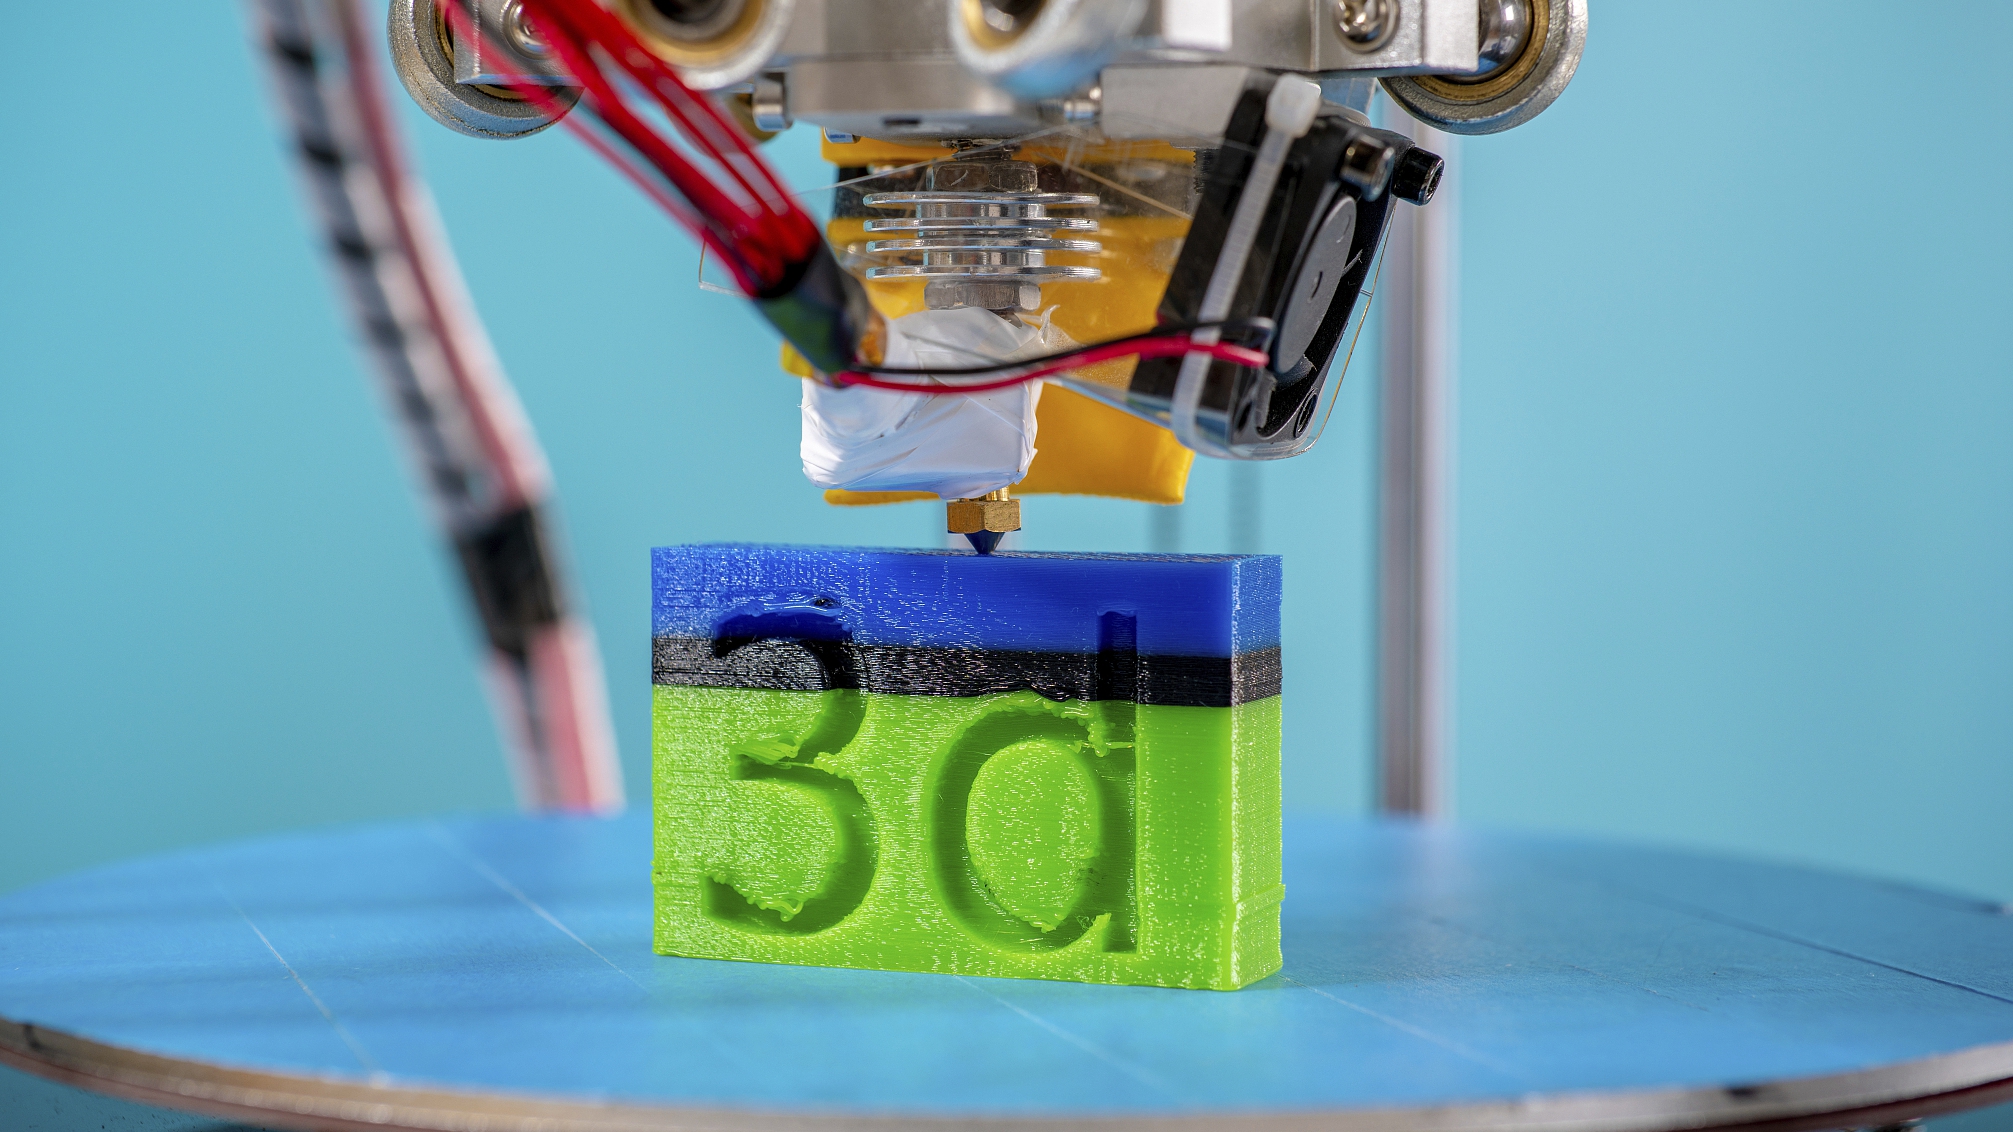 An illustration of a 3D printer. /CFP